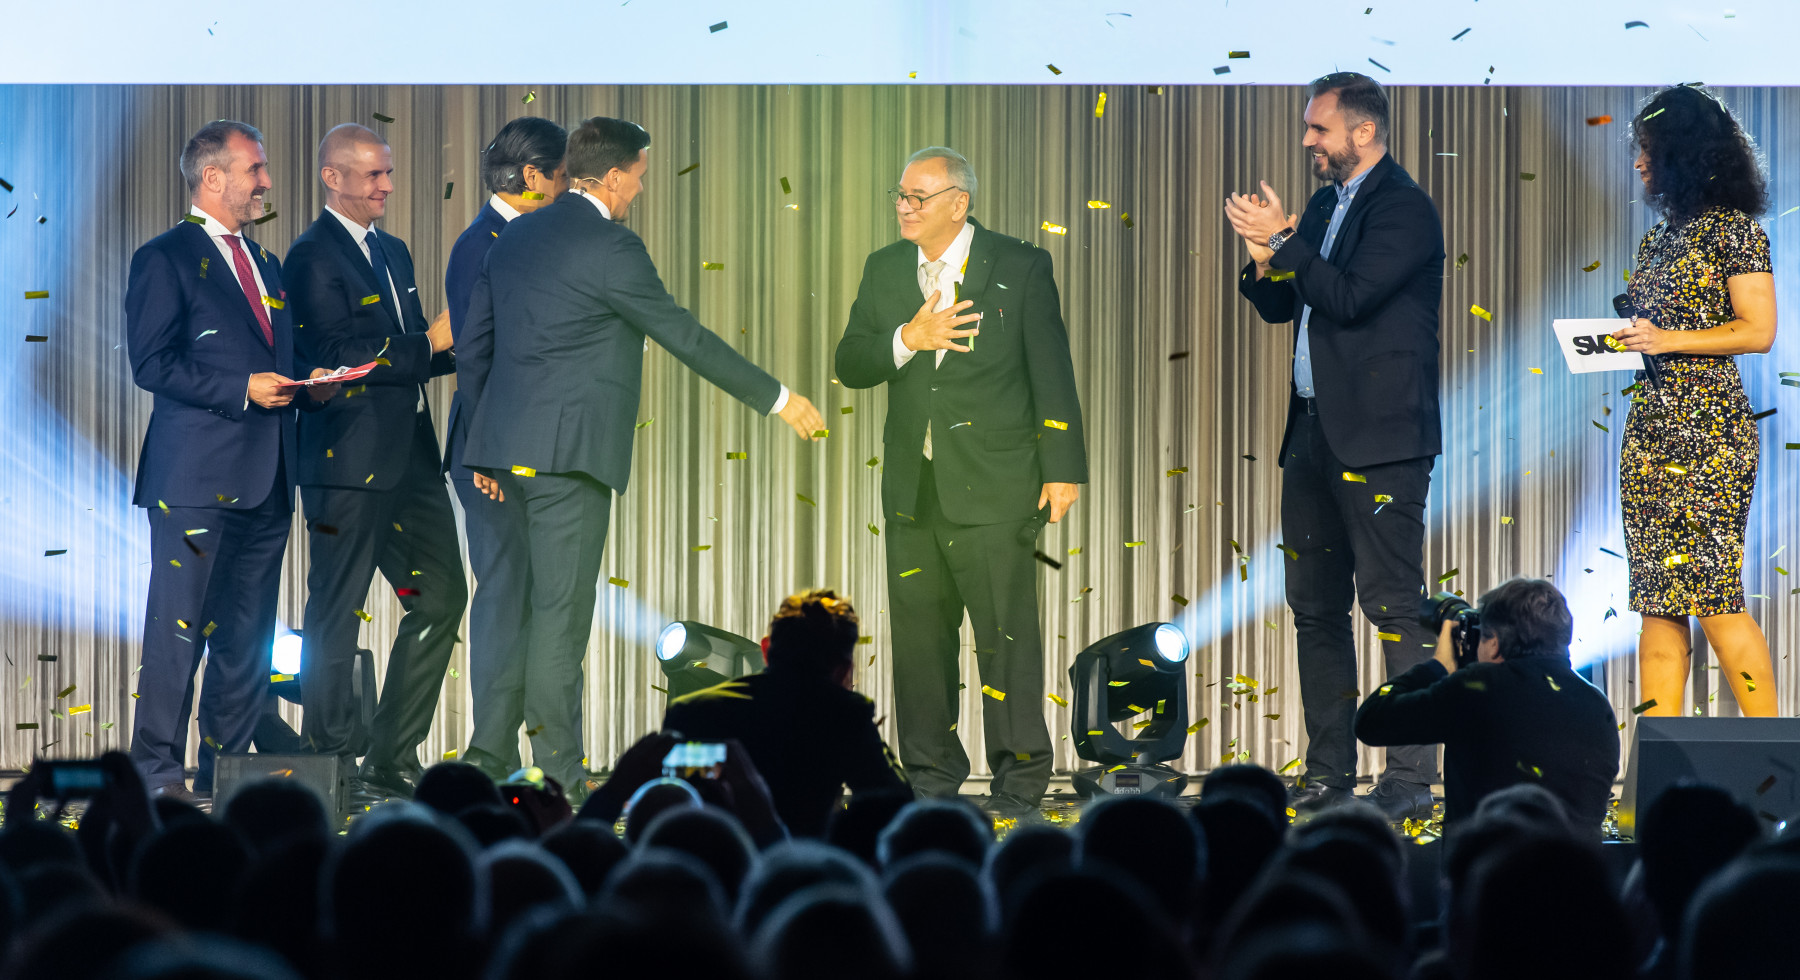 Prix Nordschweiz 2019